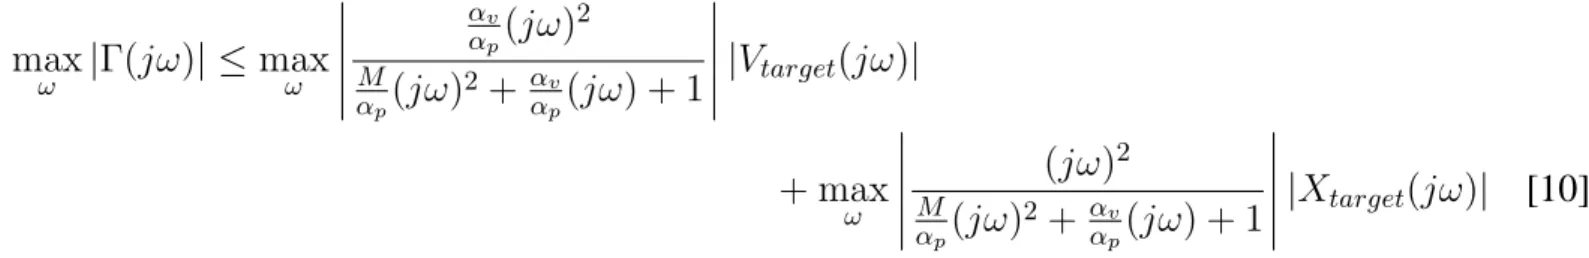 Figure 6. Champs de potentiel attractif fractionnaire avec causalité